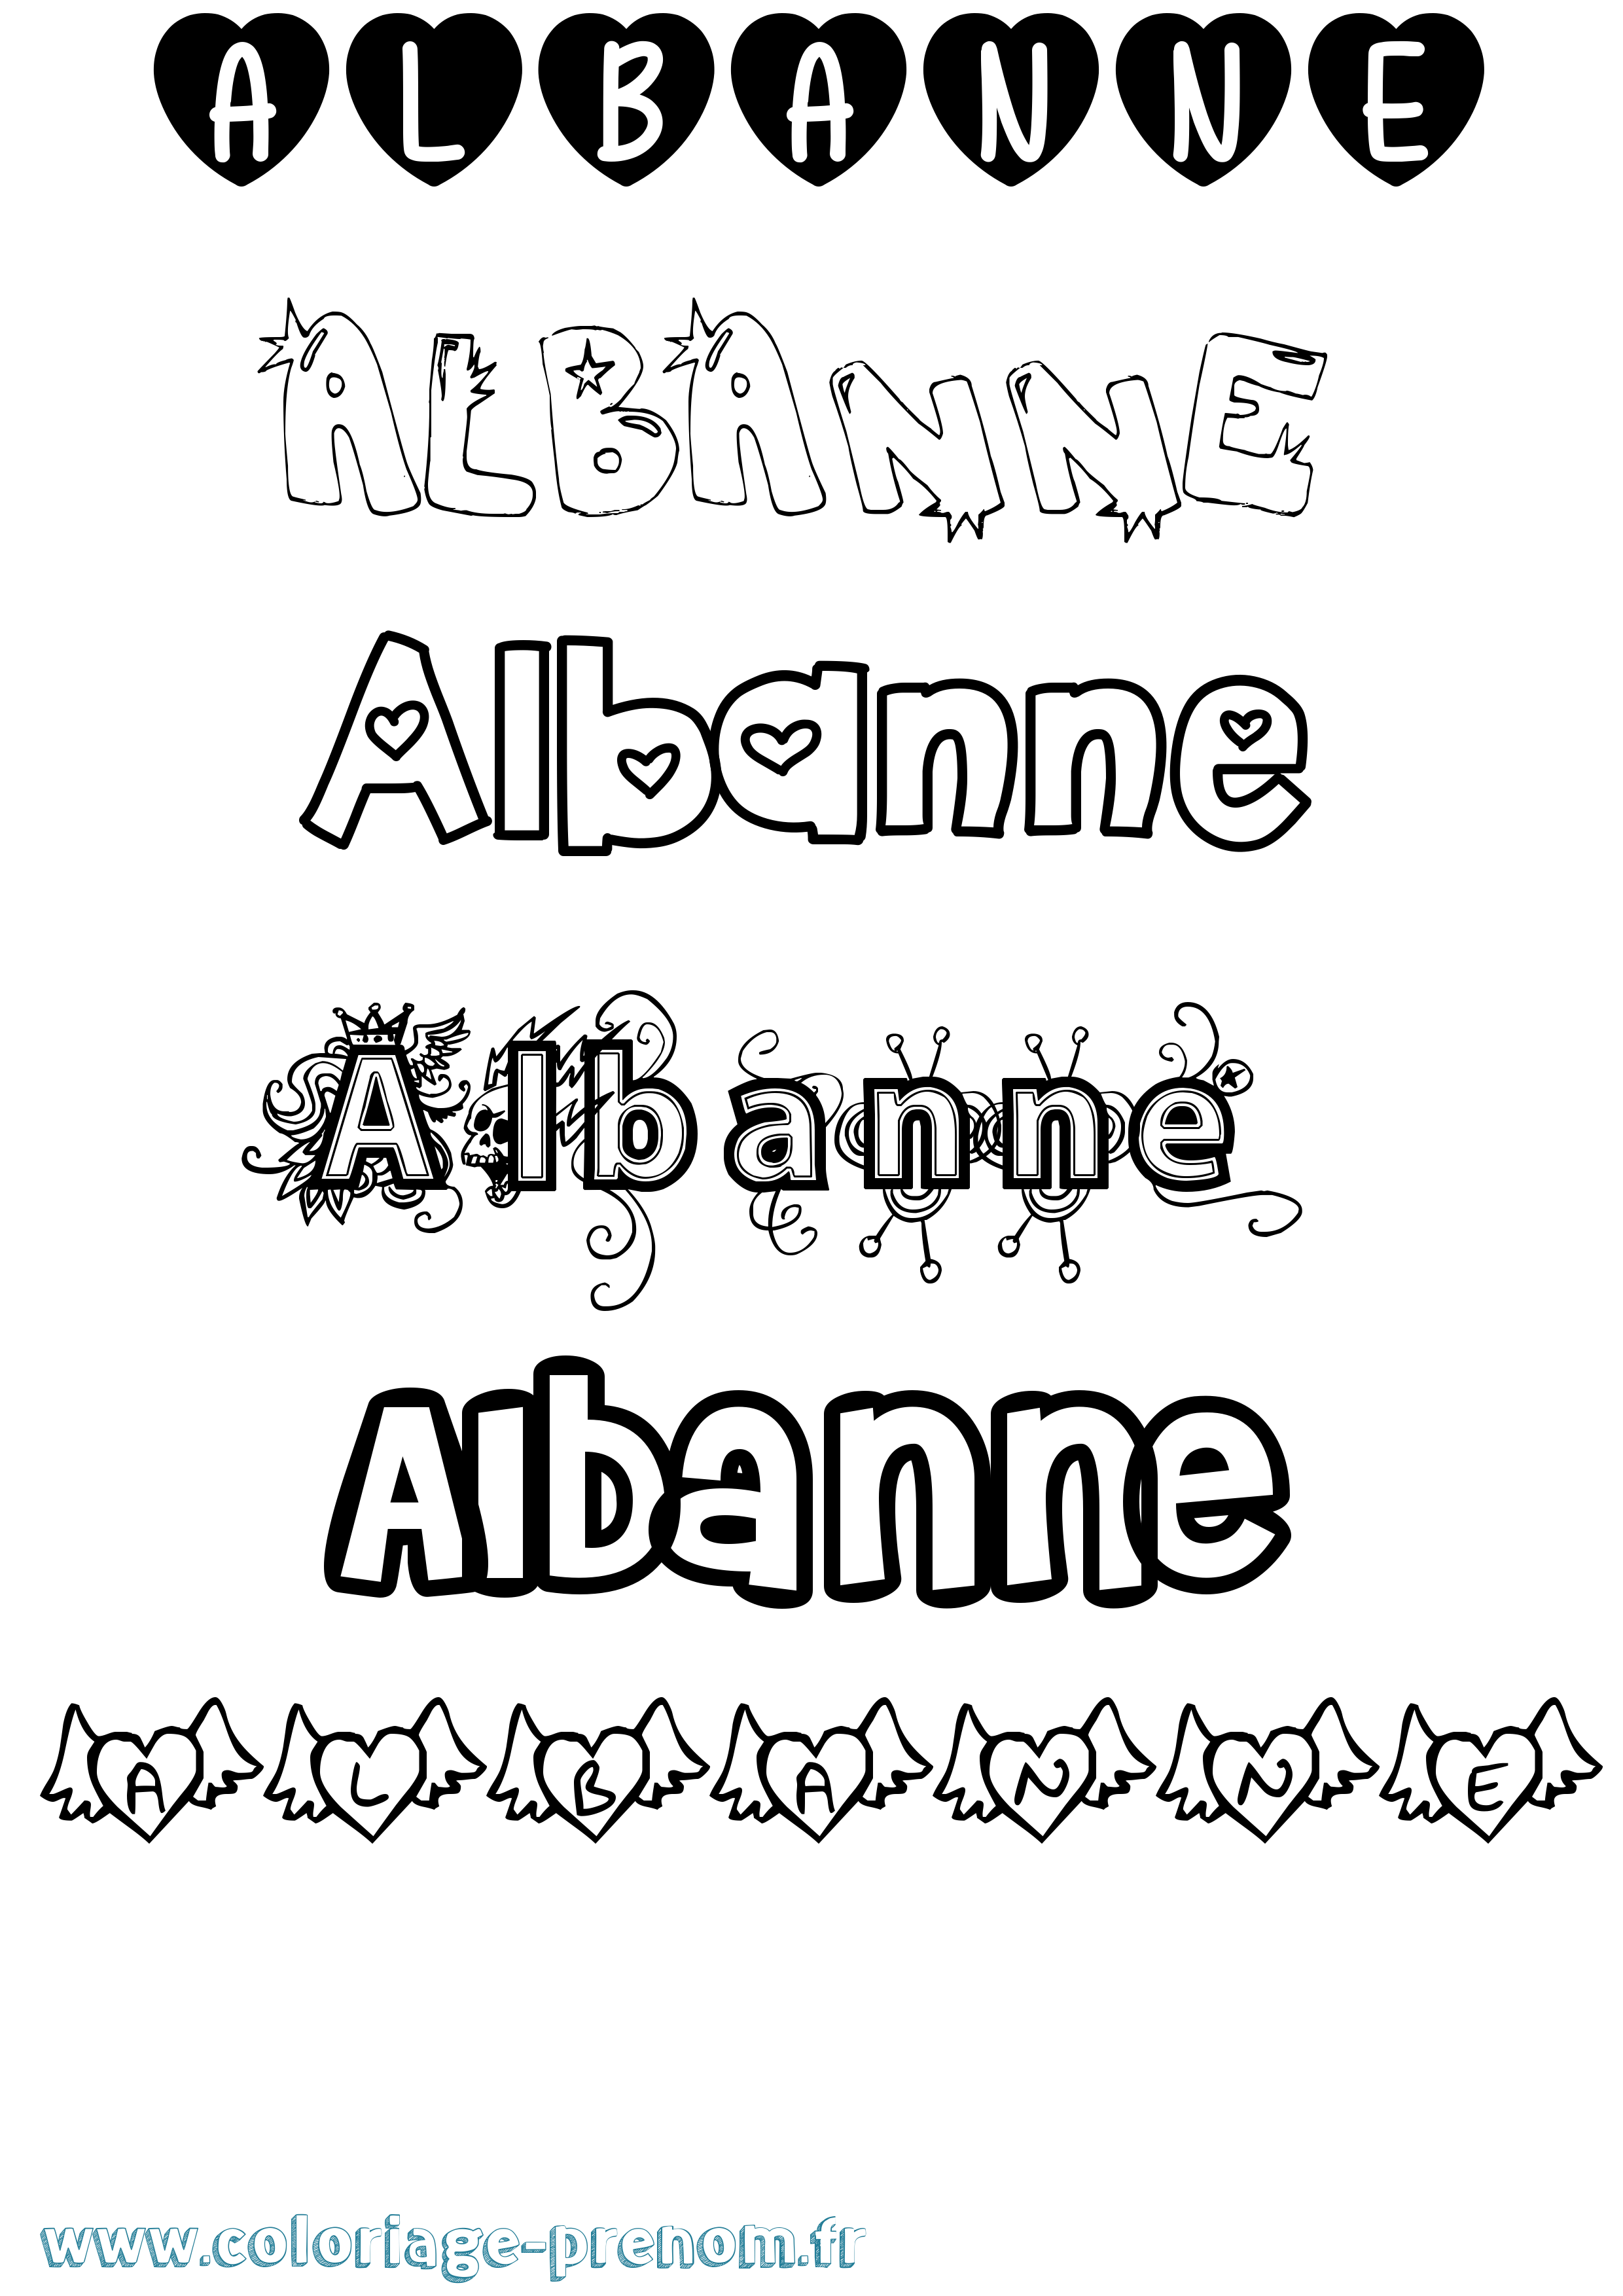 Coloriage prénom Albanne Girly